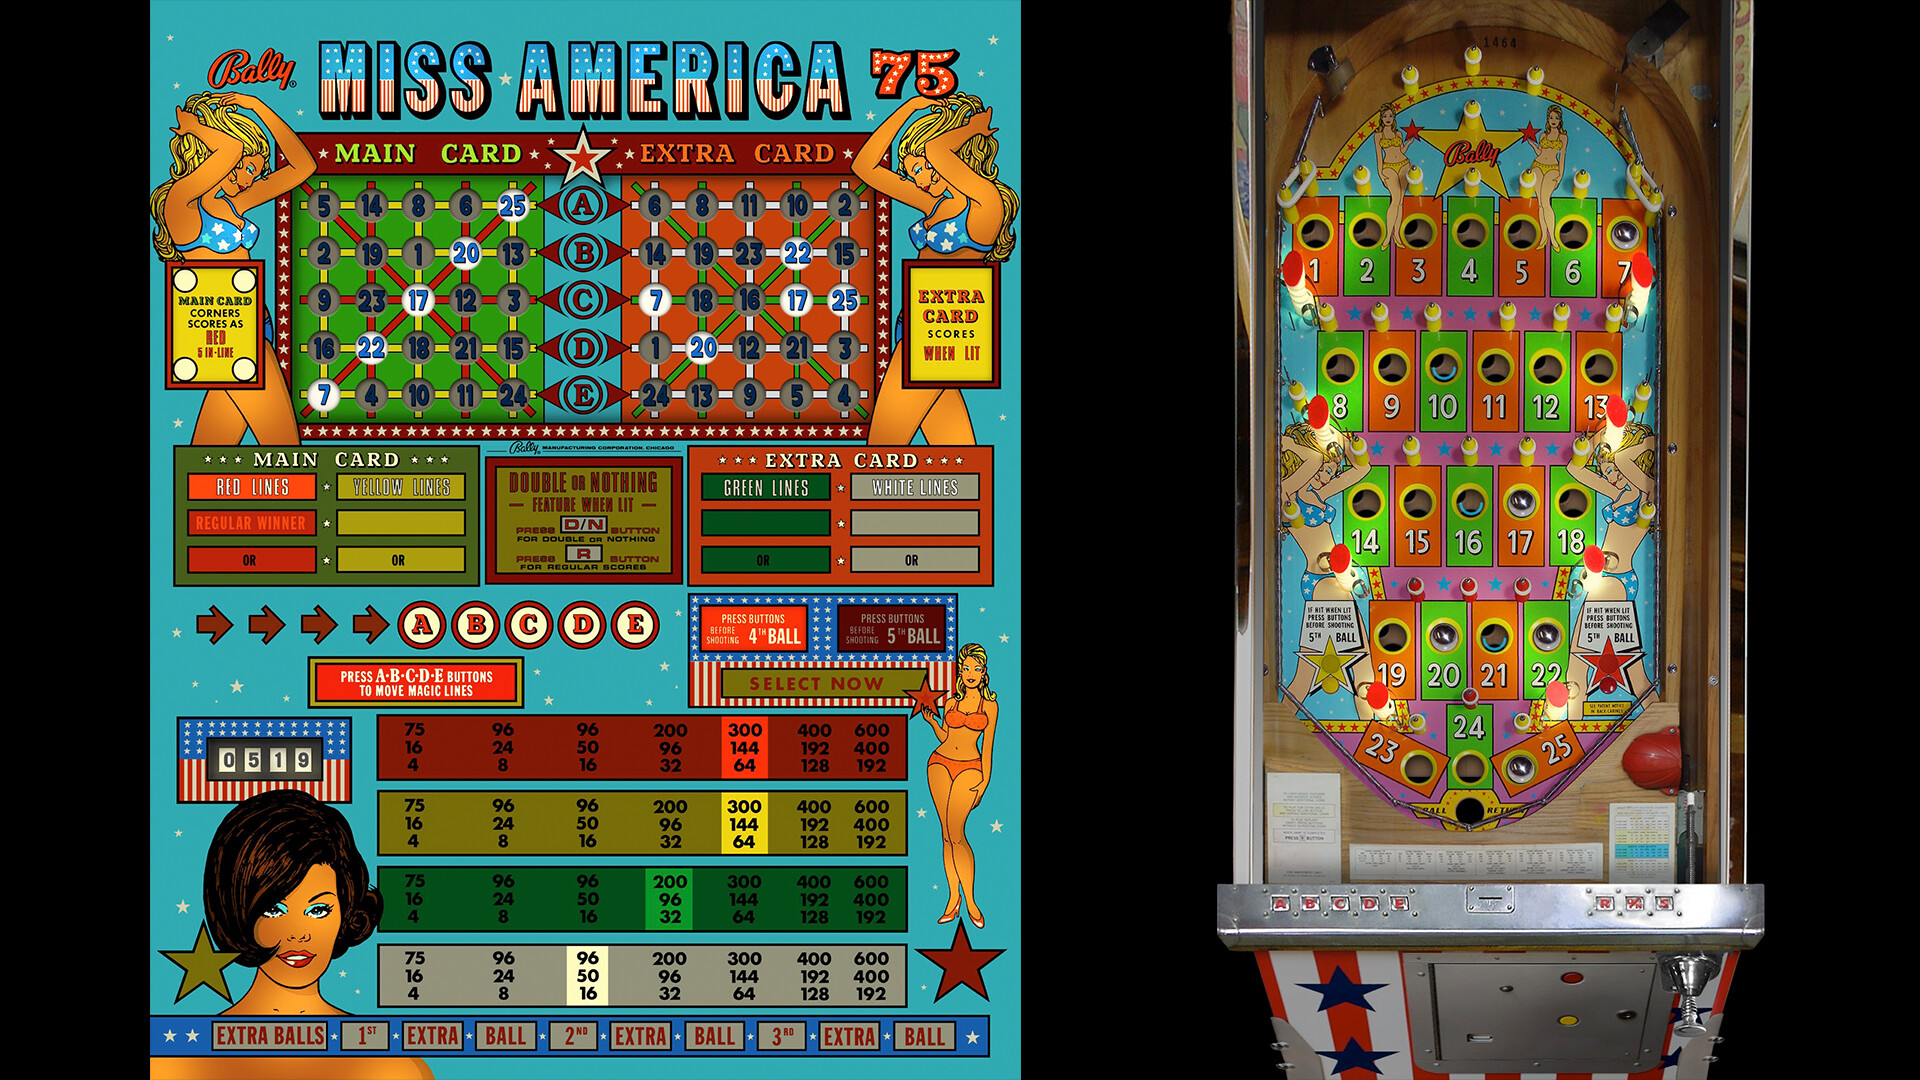 Bingo Pinball Gameroom - Bally Miss America 75 Featured Screenshot #1